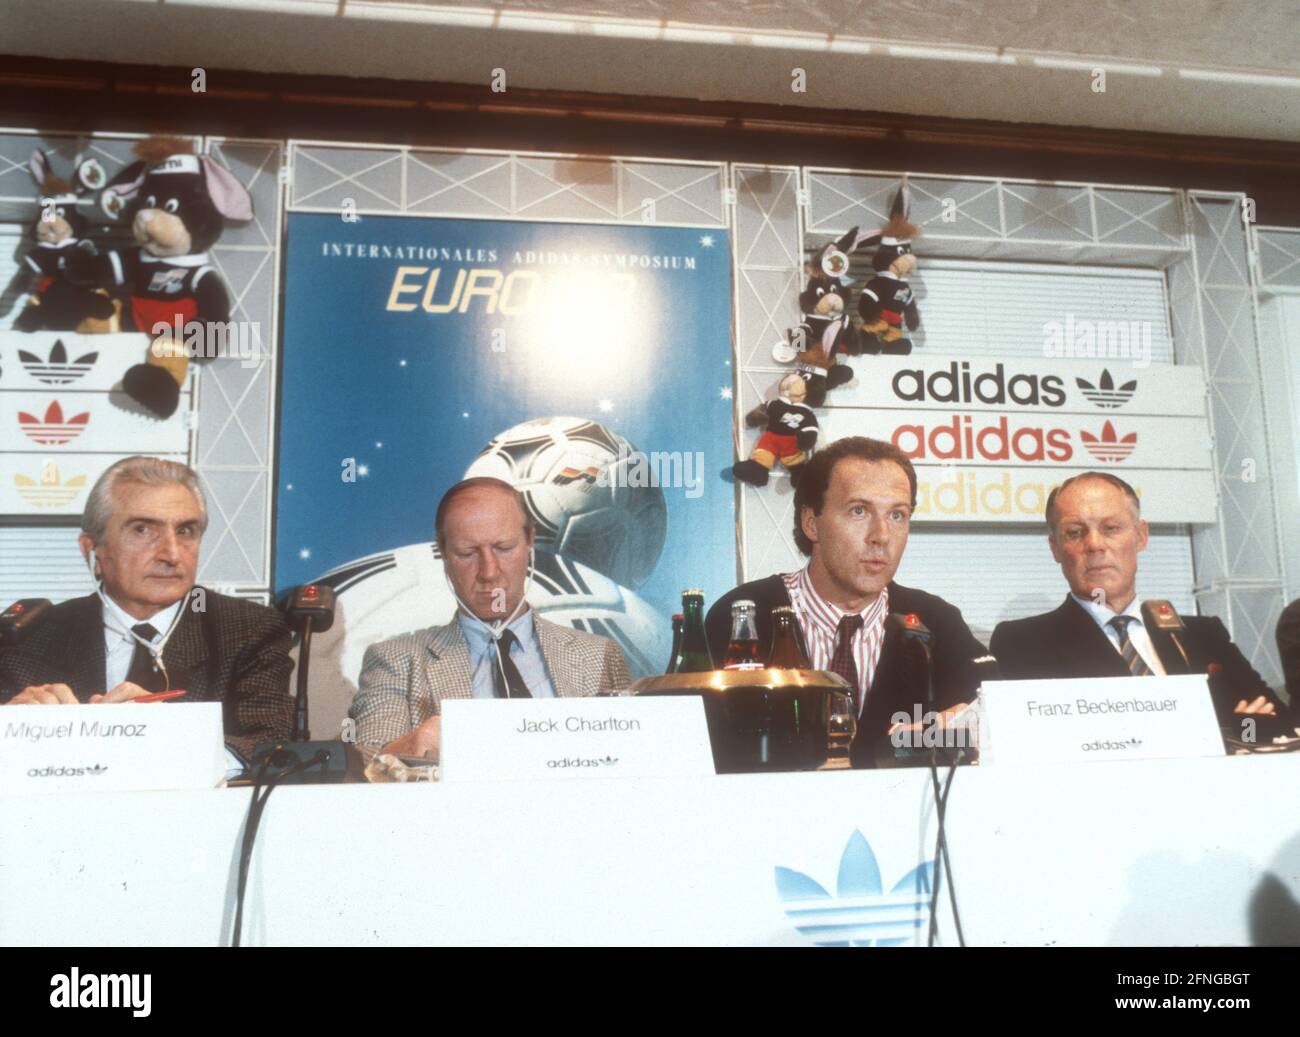 08.06.1988 le Team Manager Franz Beckenbauer (BR Allemagne) prend la parole  au International Adidas Symposium pour le Championnat d'Europe 1988. De  gauche à droite. Miguel Munoz , Jack Charlton, Beckenbauer et Rinus